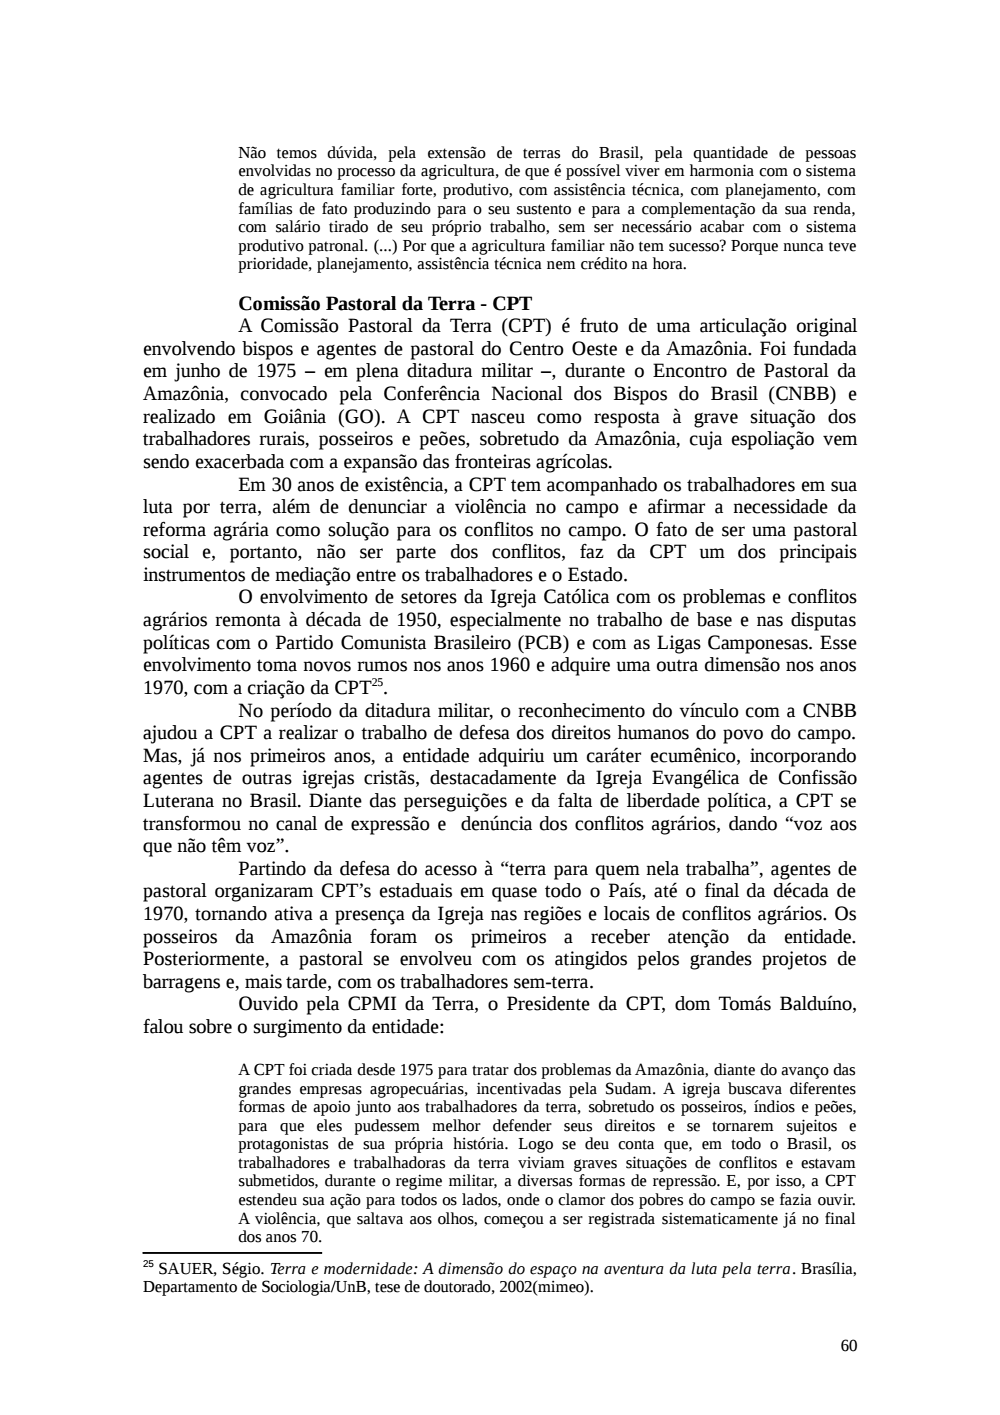 Page 60 from Relatório final da comissão